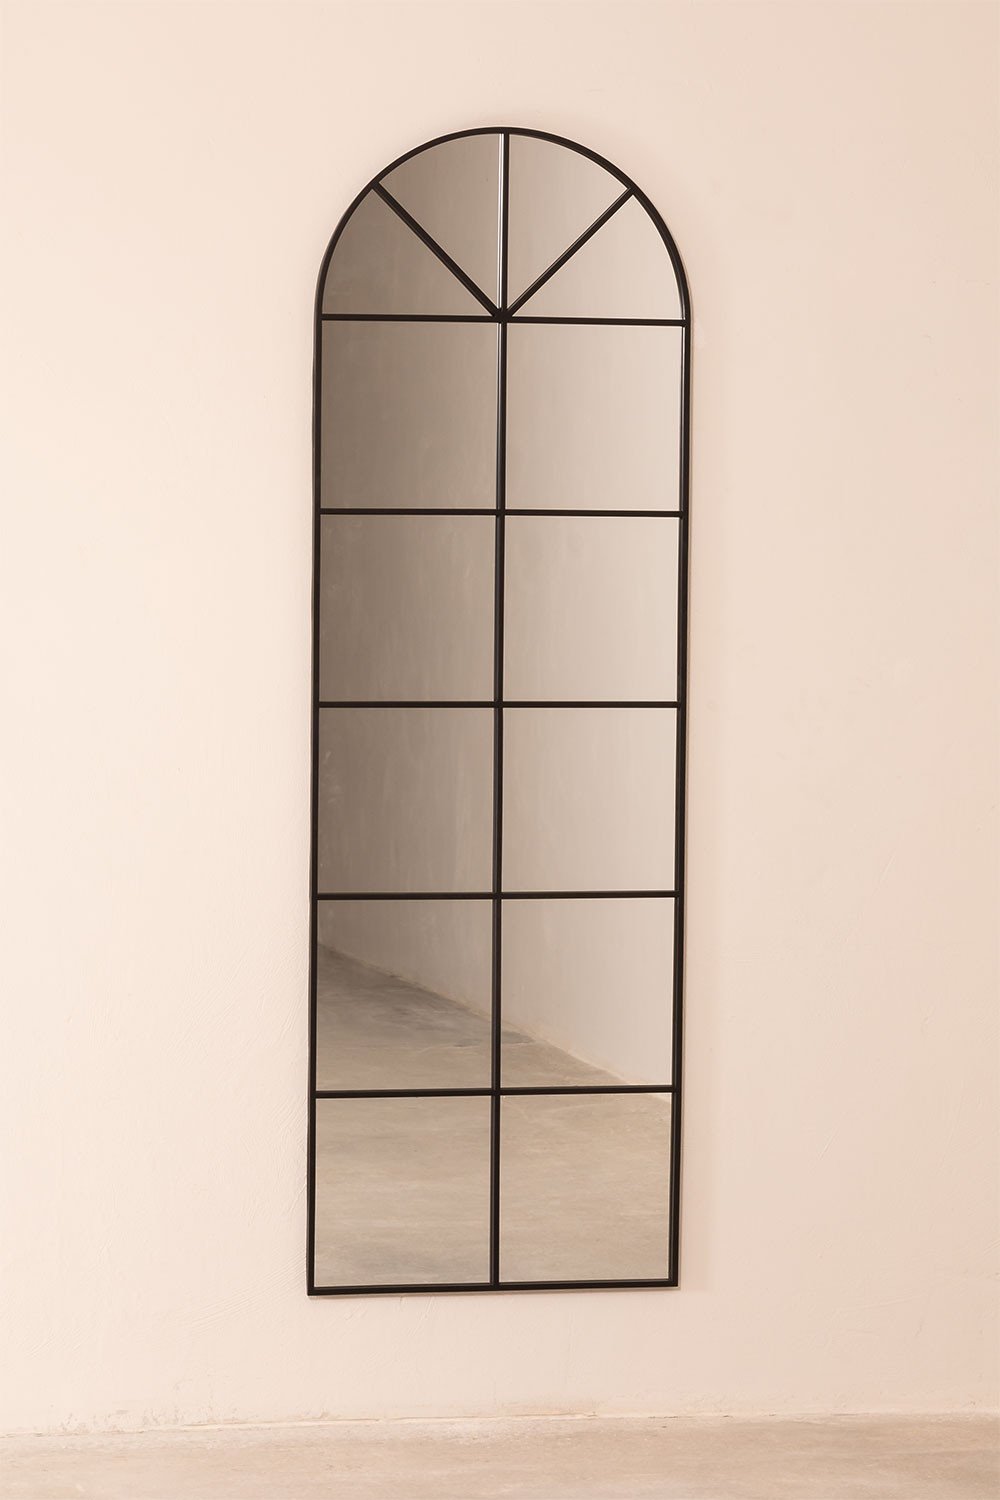 https://cdn.sklum.com/it/wk/771839/specchio-da-parete-in-metallo-effetto-finestra-180x59-cm-paola-l.jpg?cf-resize=gallery